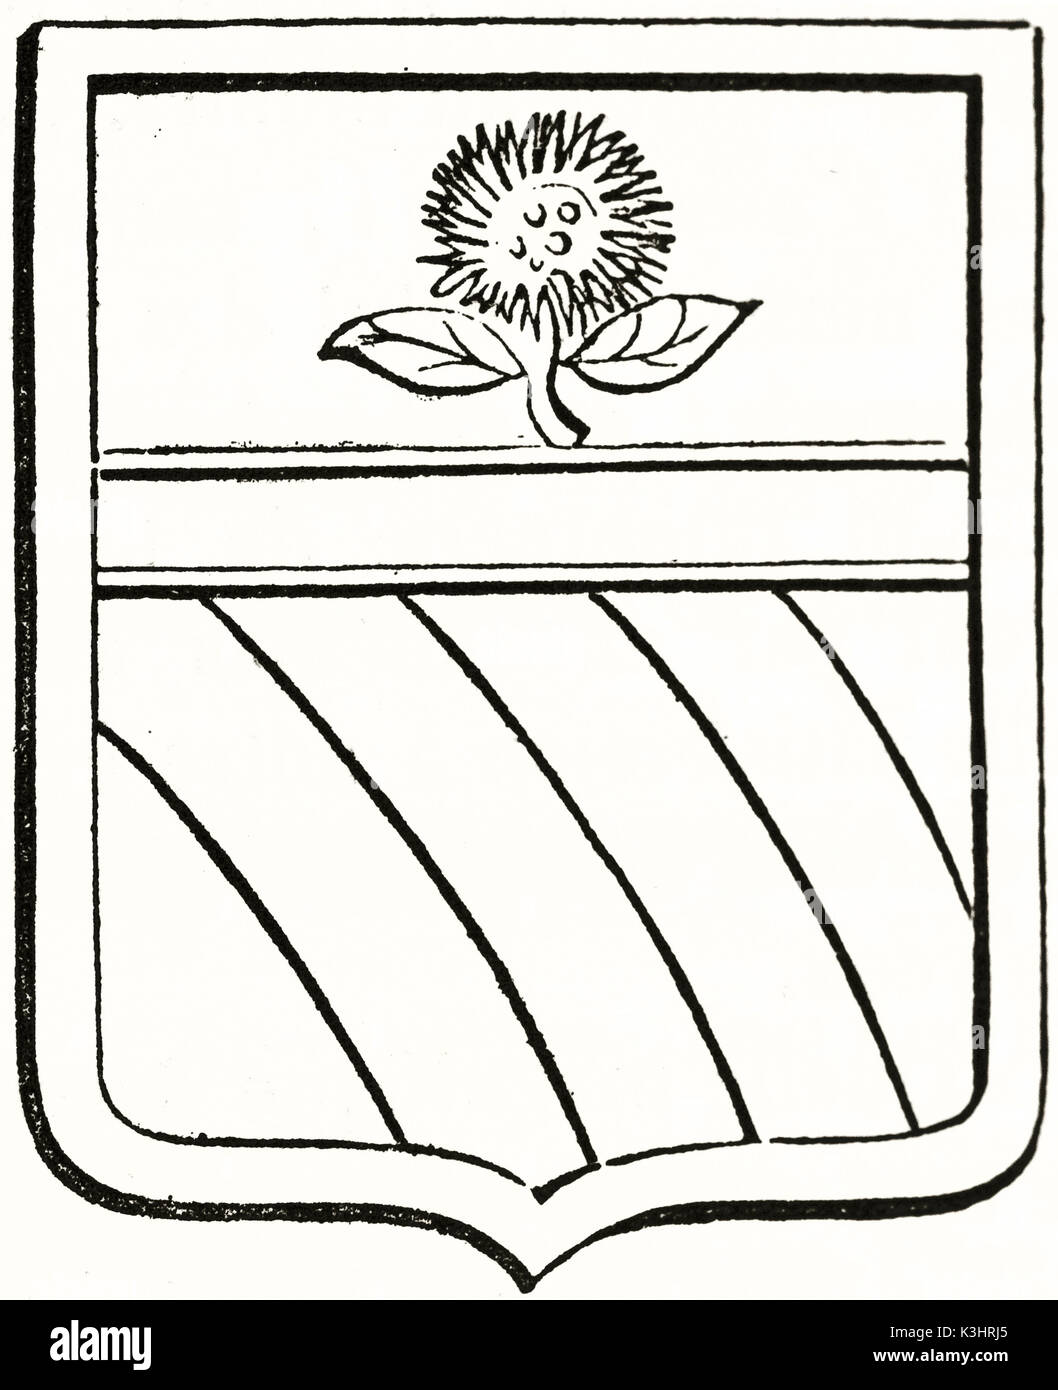 Alte graviert Reproduktion eines Wappen in Form einer Kastanie Igel. Von unbekannter Autor, auf Magasin Pittoresque, Paris, 1838 veröffentlicht. Stockfoto